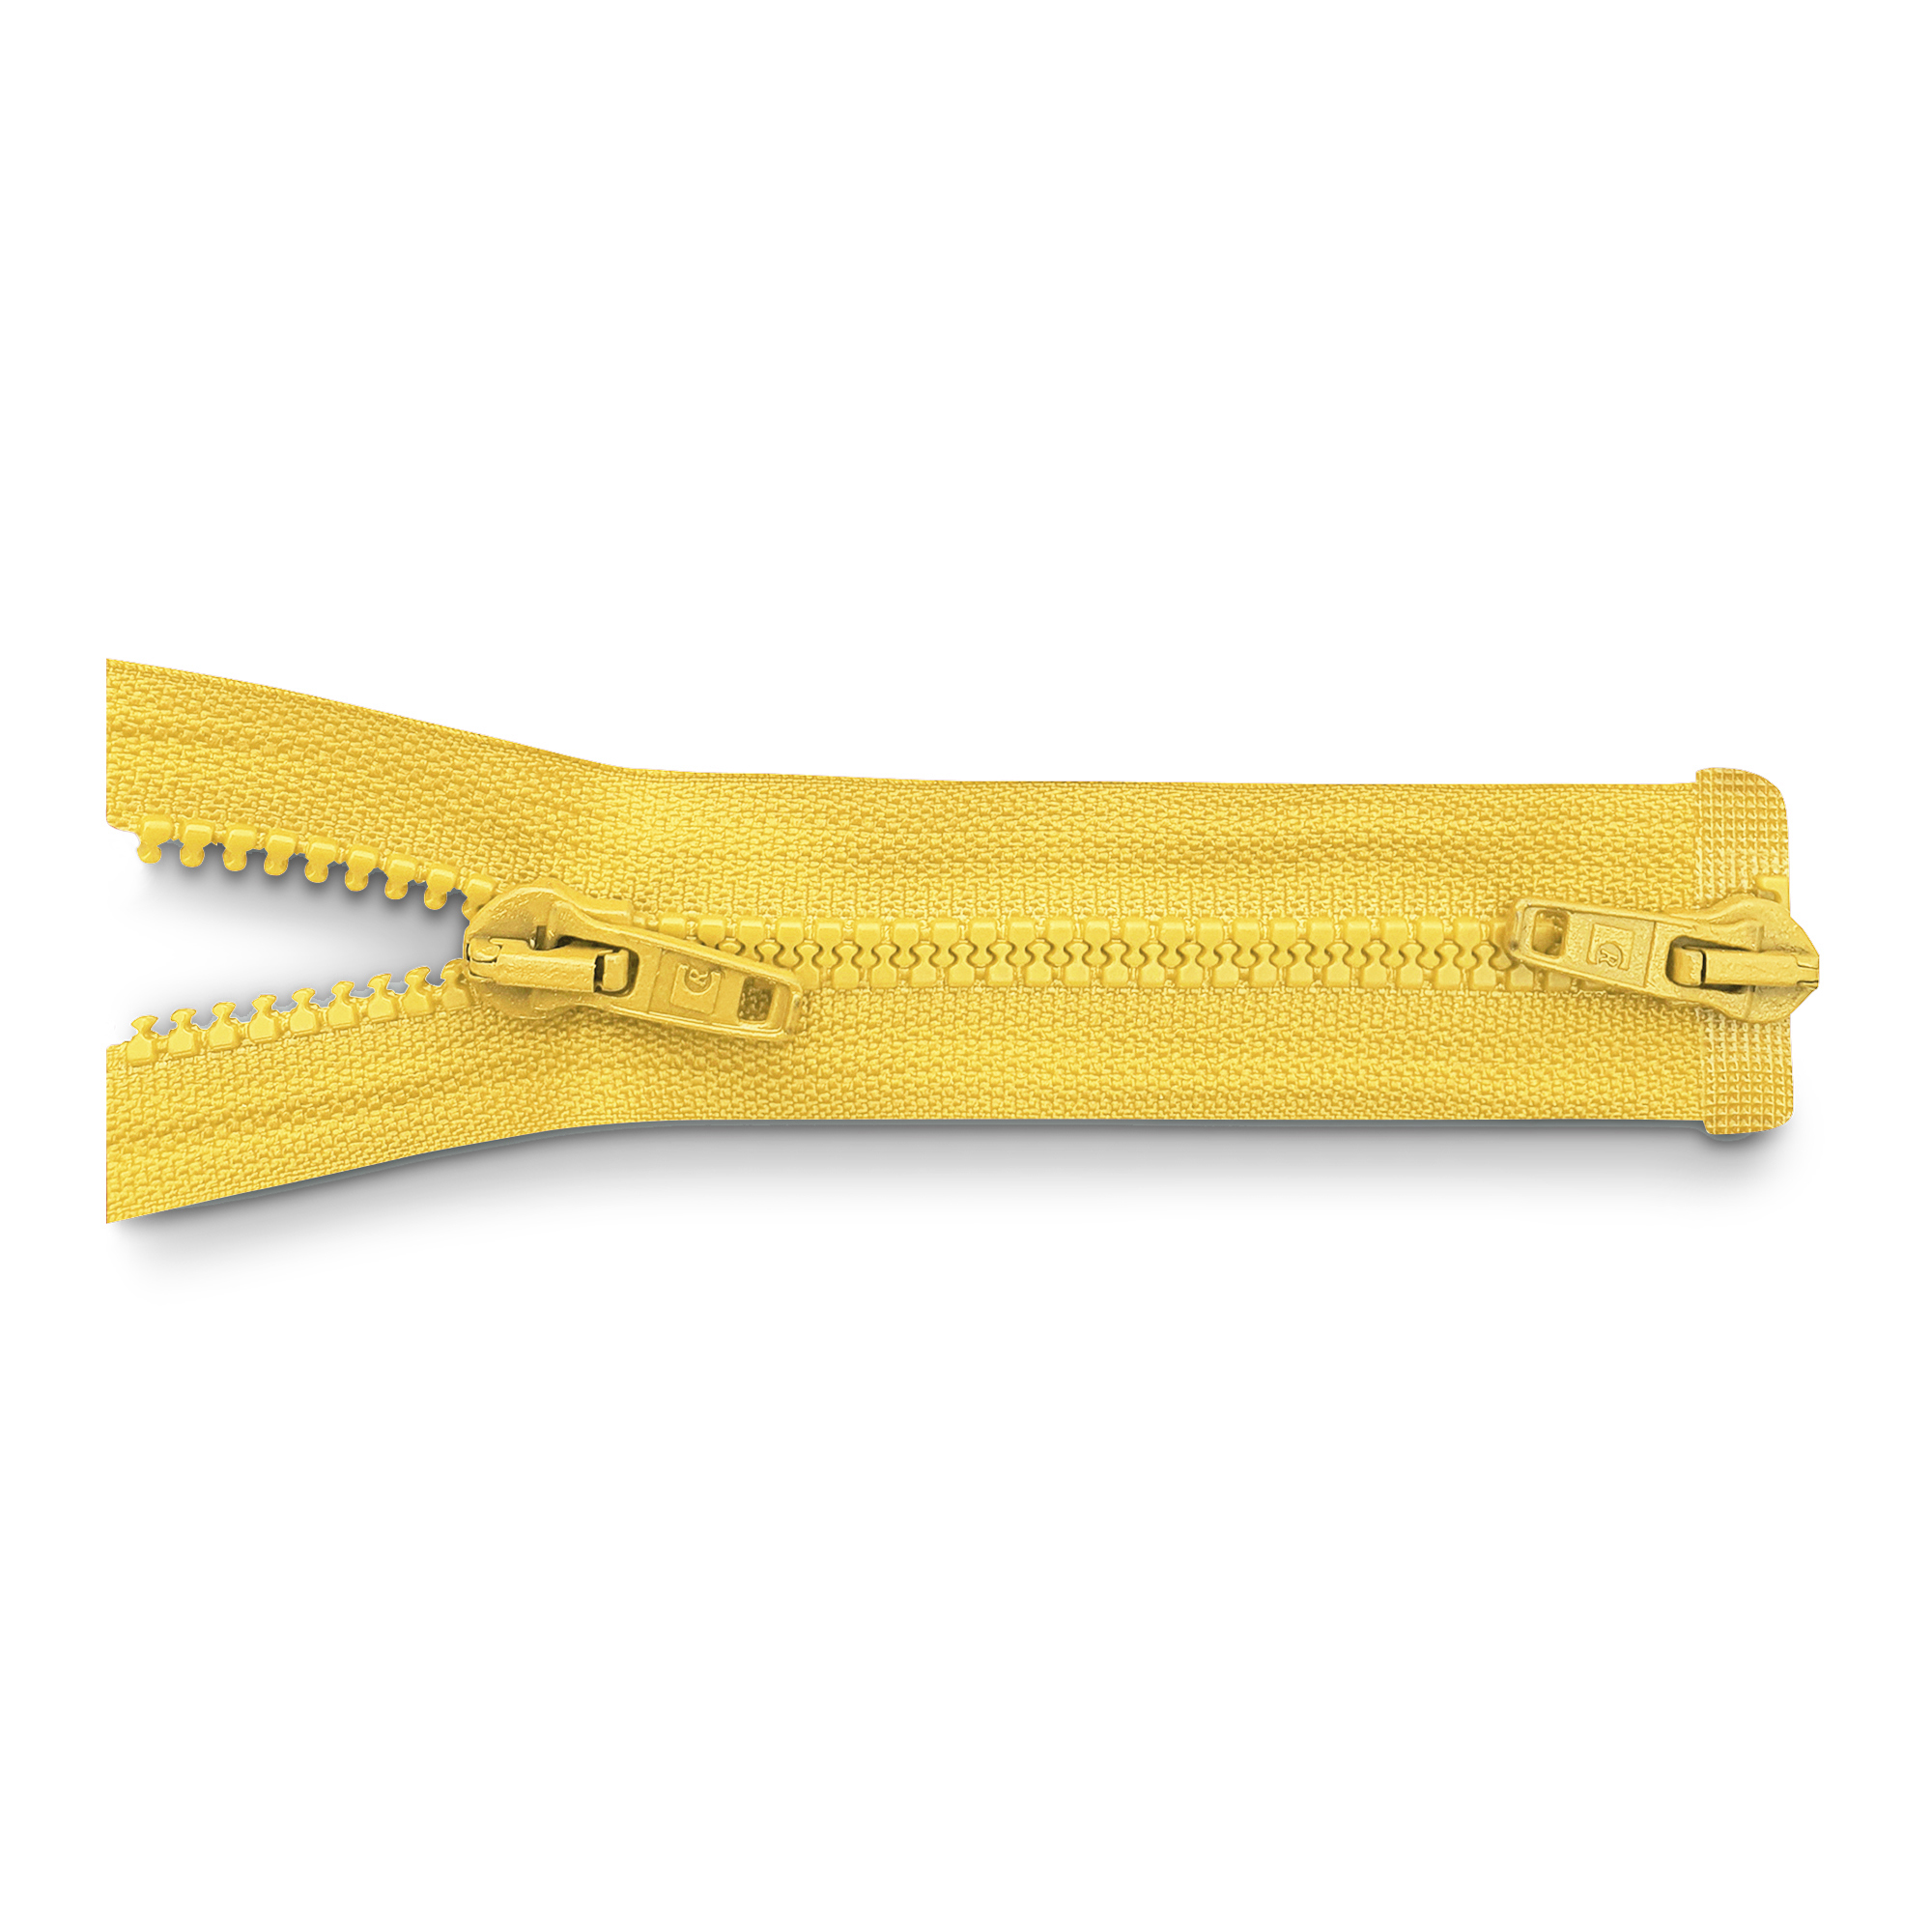 Reißverschluss 100cm, 2-Wege, K.stoff Zähne breit, kanariengelb, hochwertiger Marken-Reißverschluss von Rubi/Barcelona